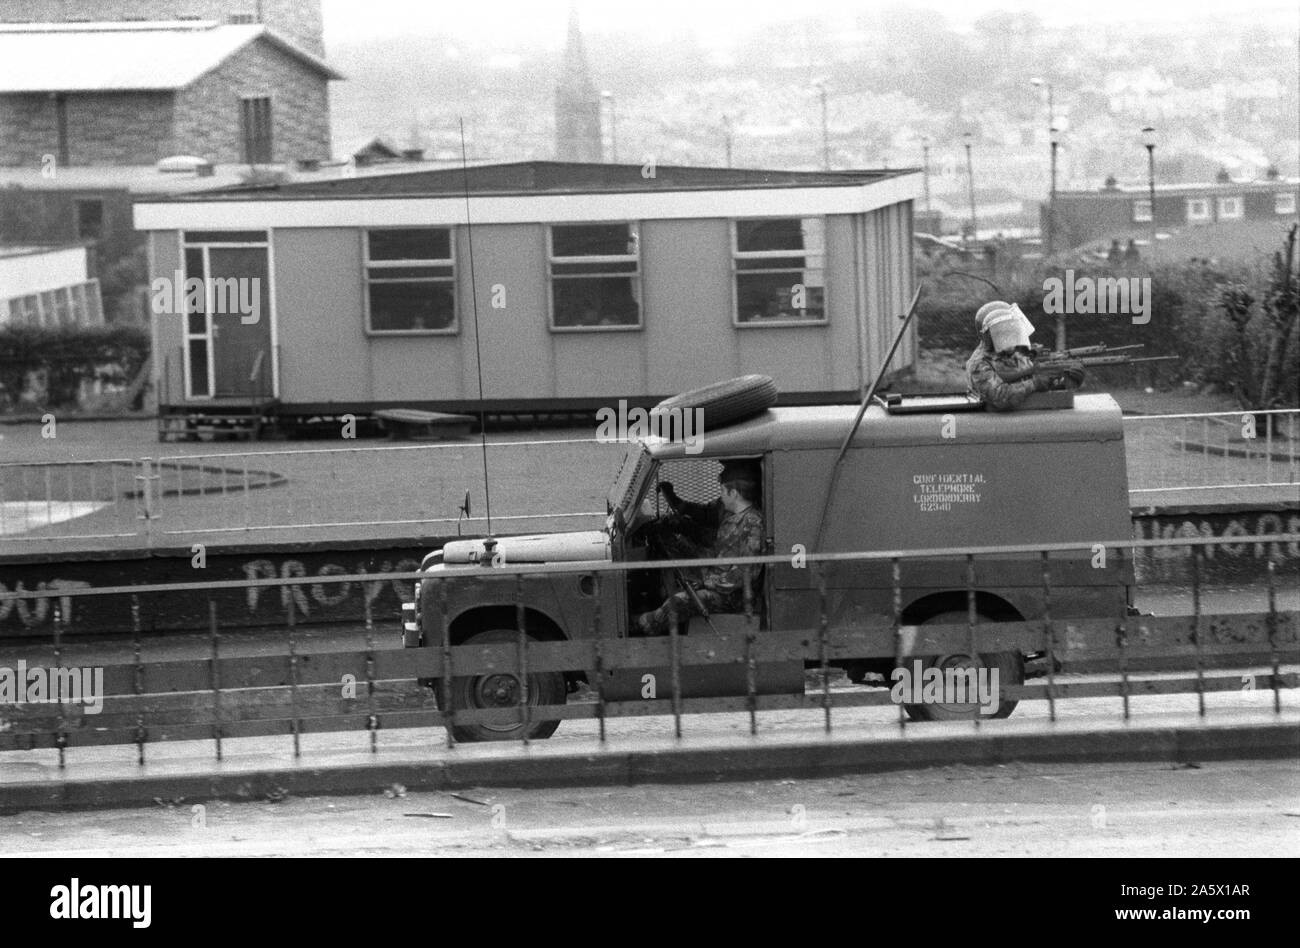 Les troubles des années 1980, l'Irlande du Nord Londonderry Derry 1983 soldats britanniques en patrouille en véhicule blindé 80s HOMER SYKES Banque D'Images